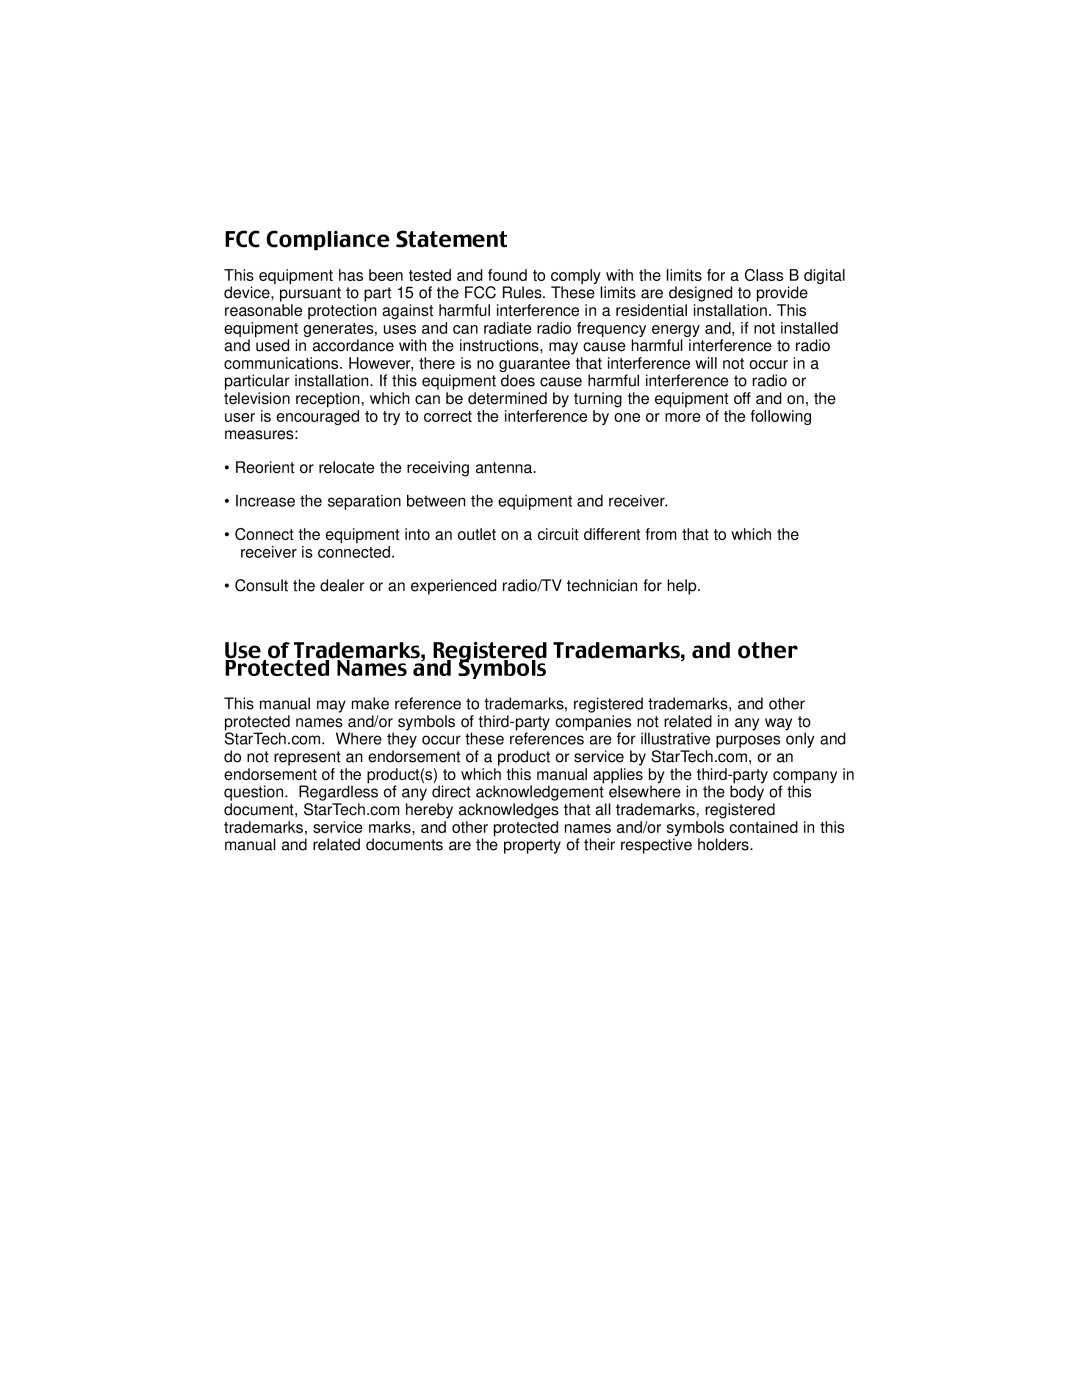 StarTech.com PCI4S650PW, PCI2S650PW instruction manual FCC Compliance Statement 